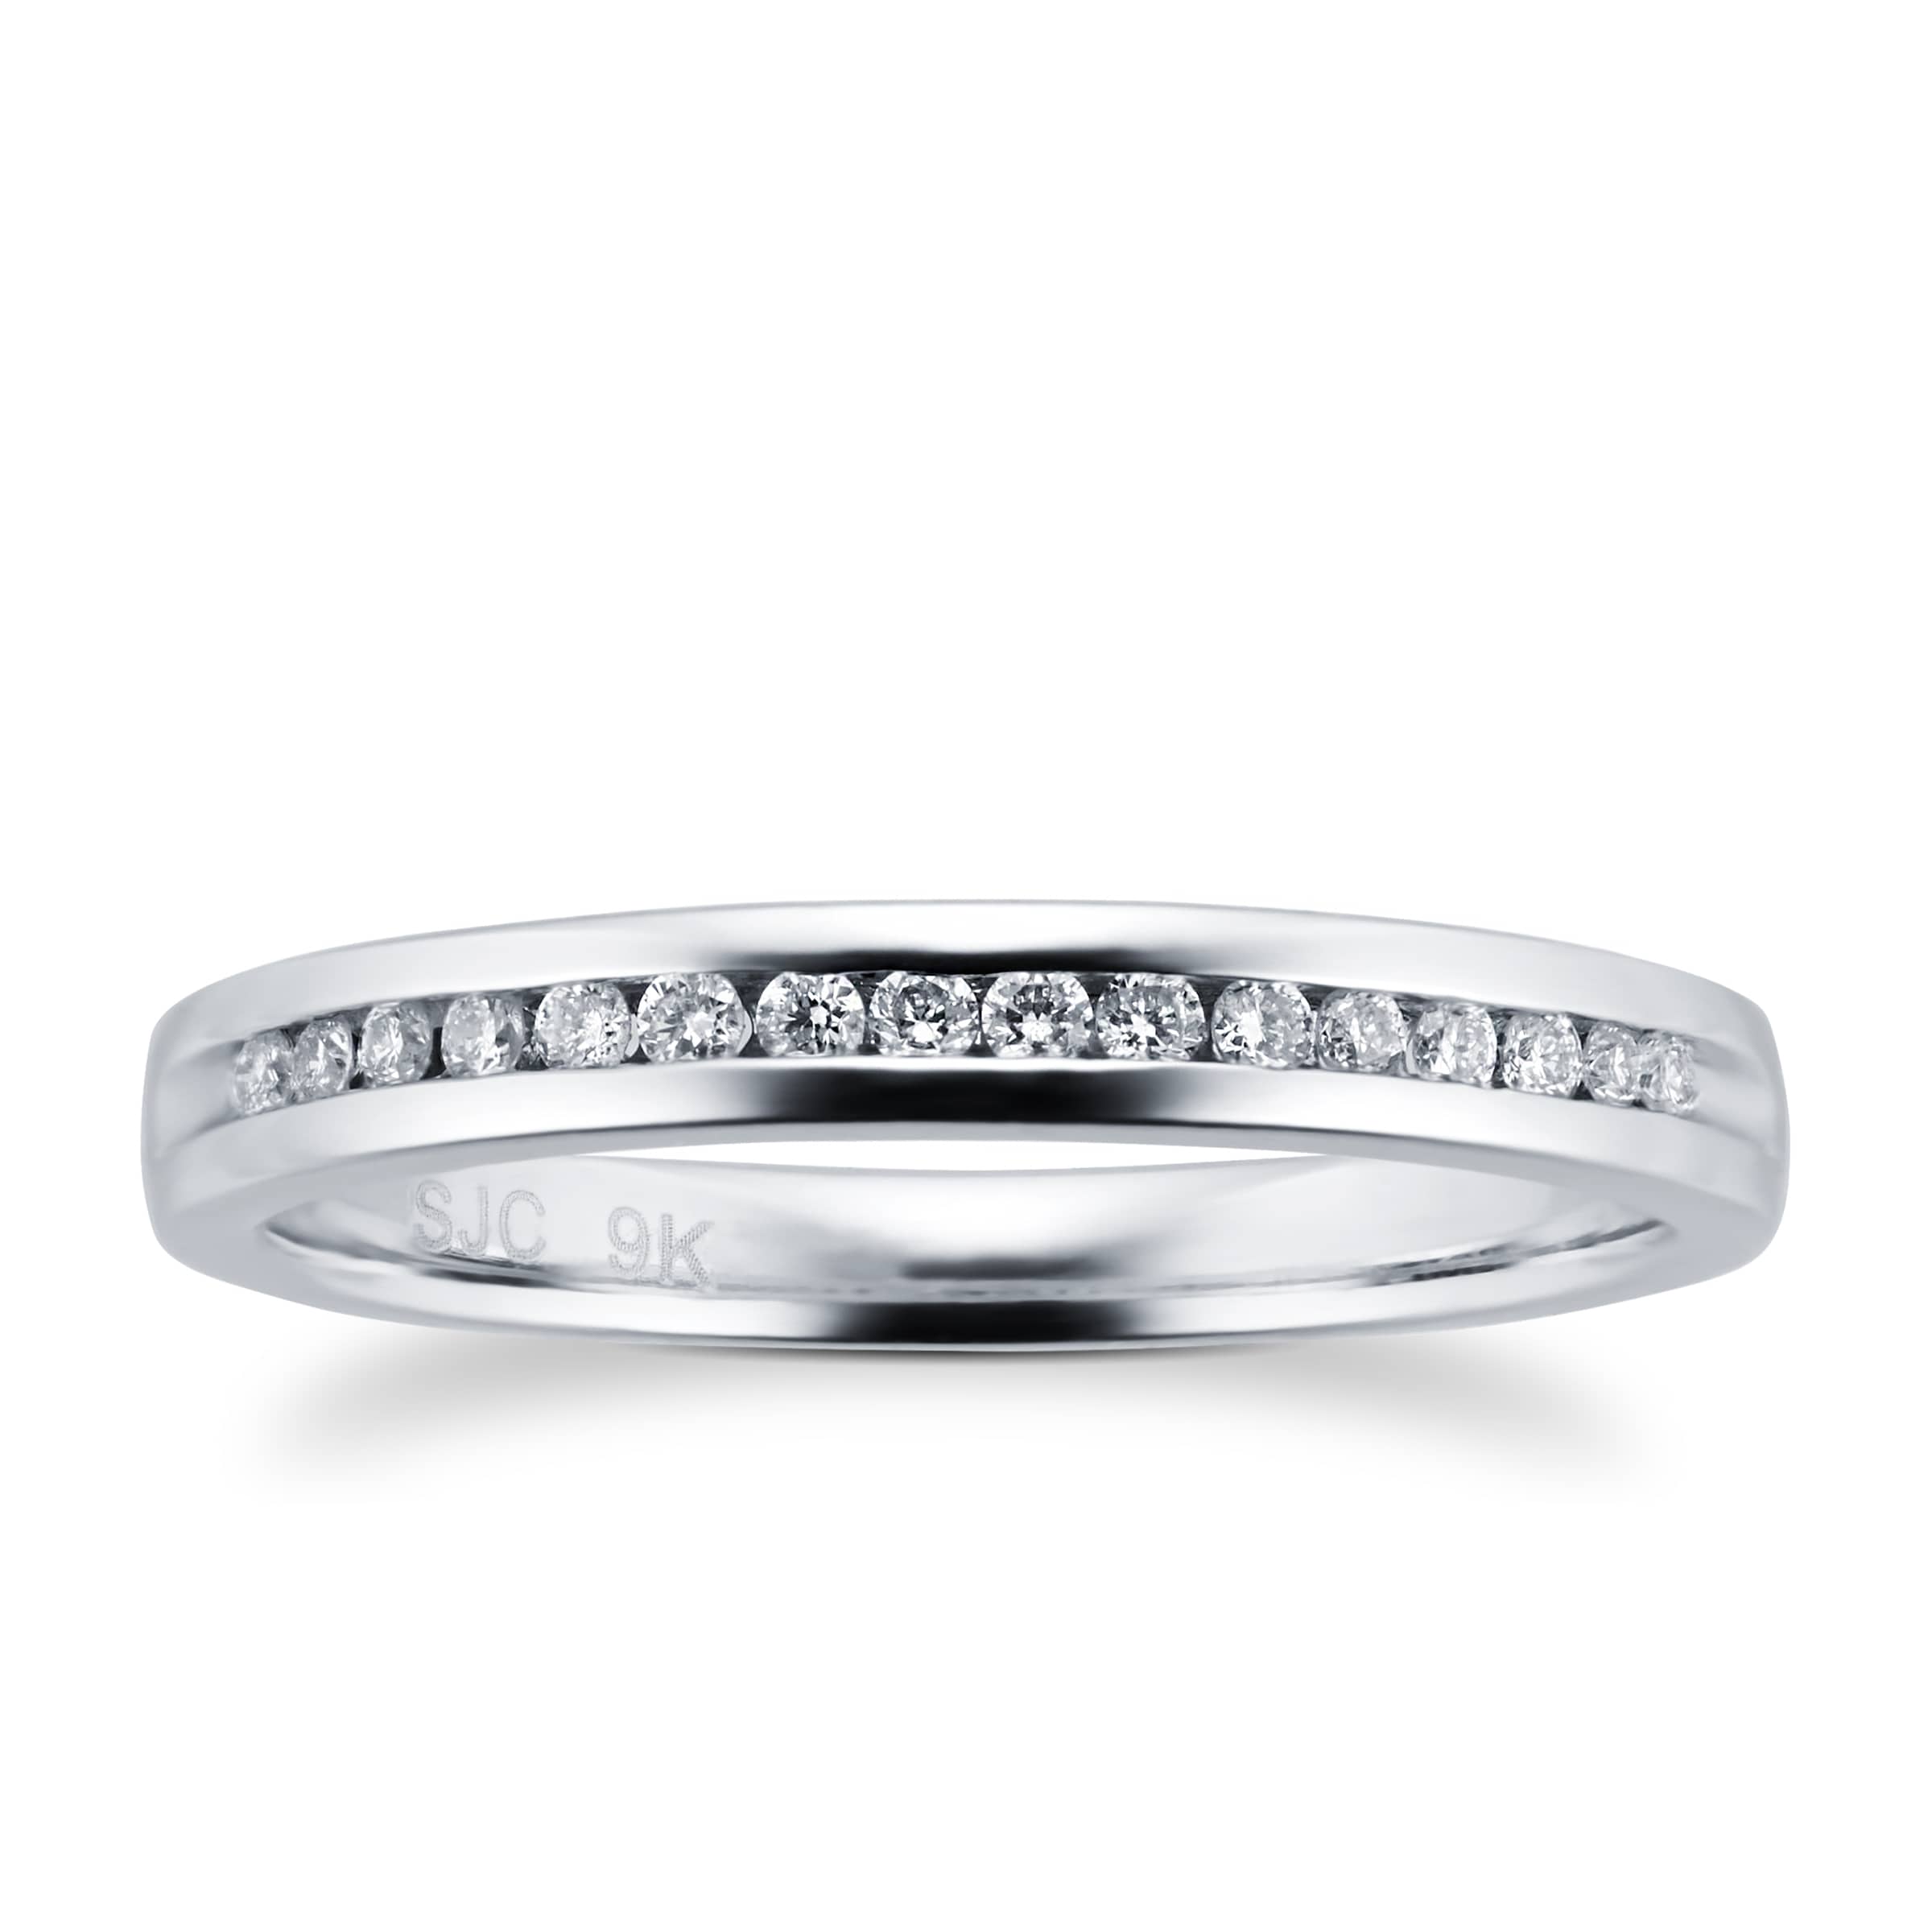 Ladies 0.08 Total Carat Weight Diamond 2mm Wedding Ring In 9 Carat White Gold - Ring Size I